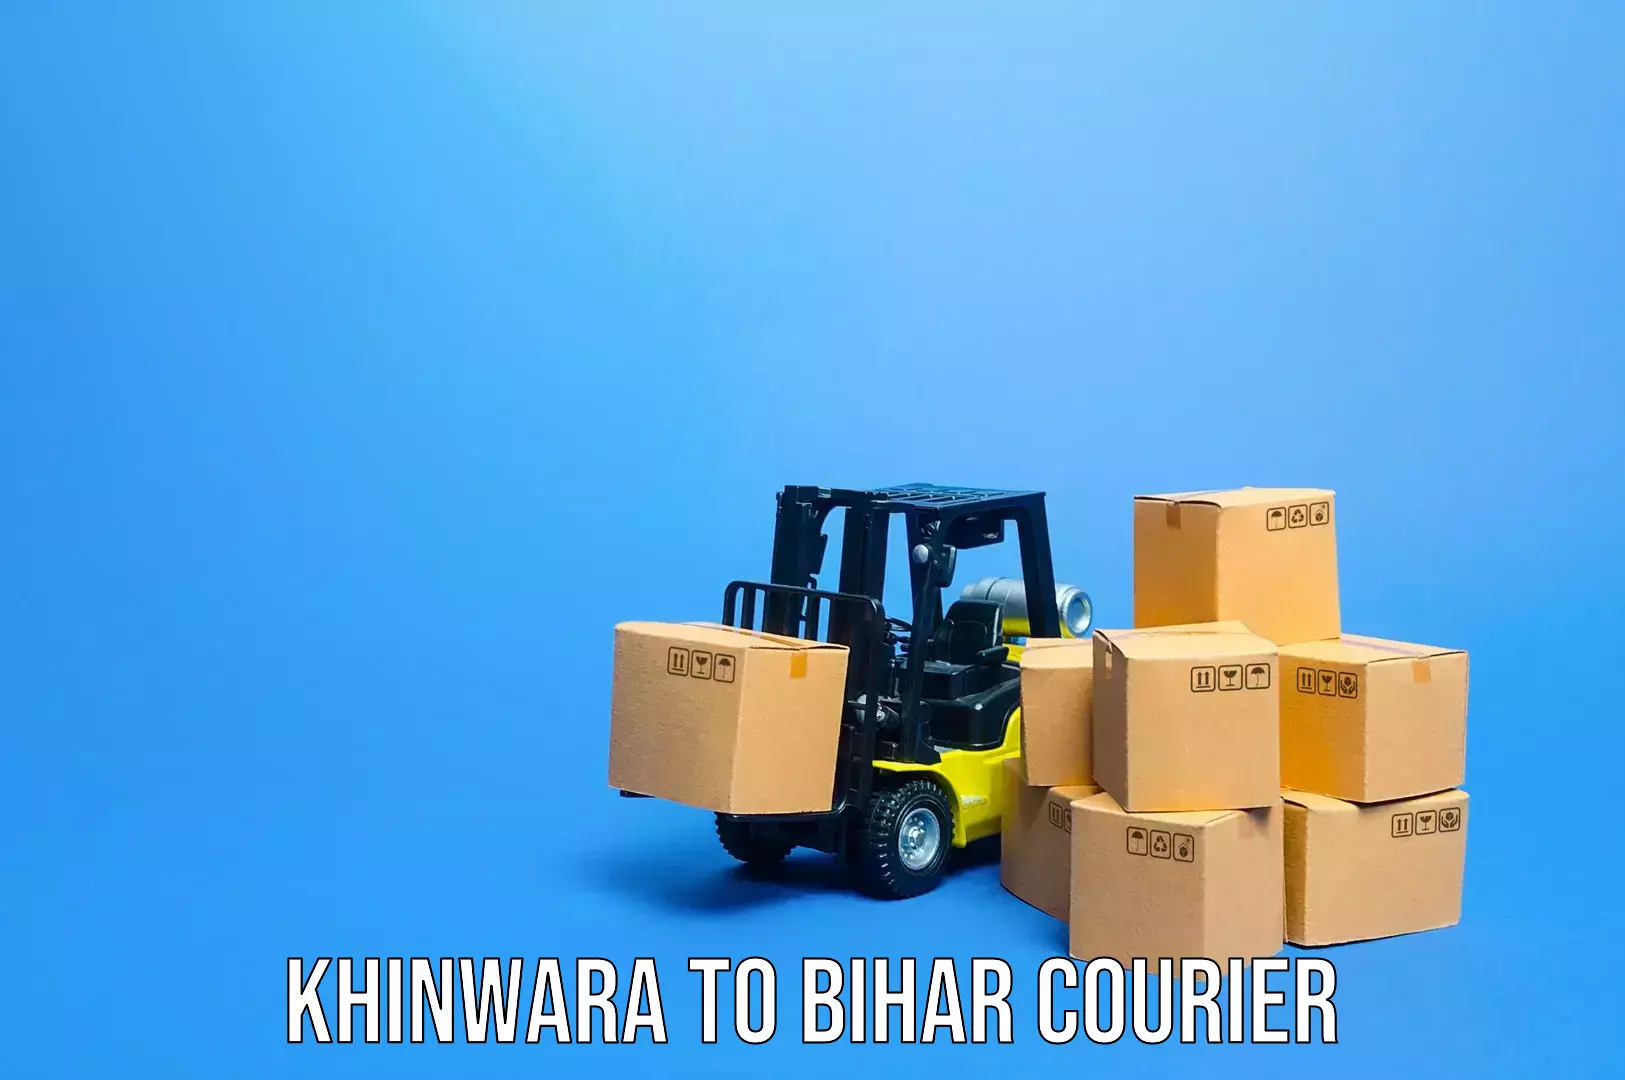 Baggage transport technology Khinwara to Minapur